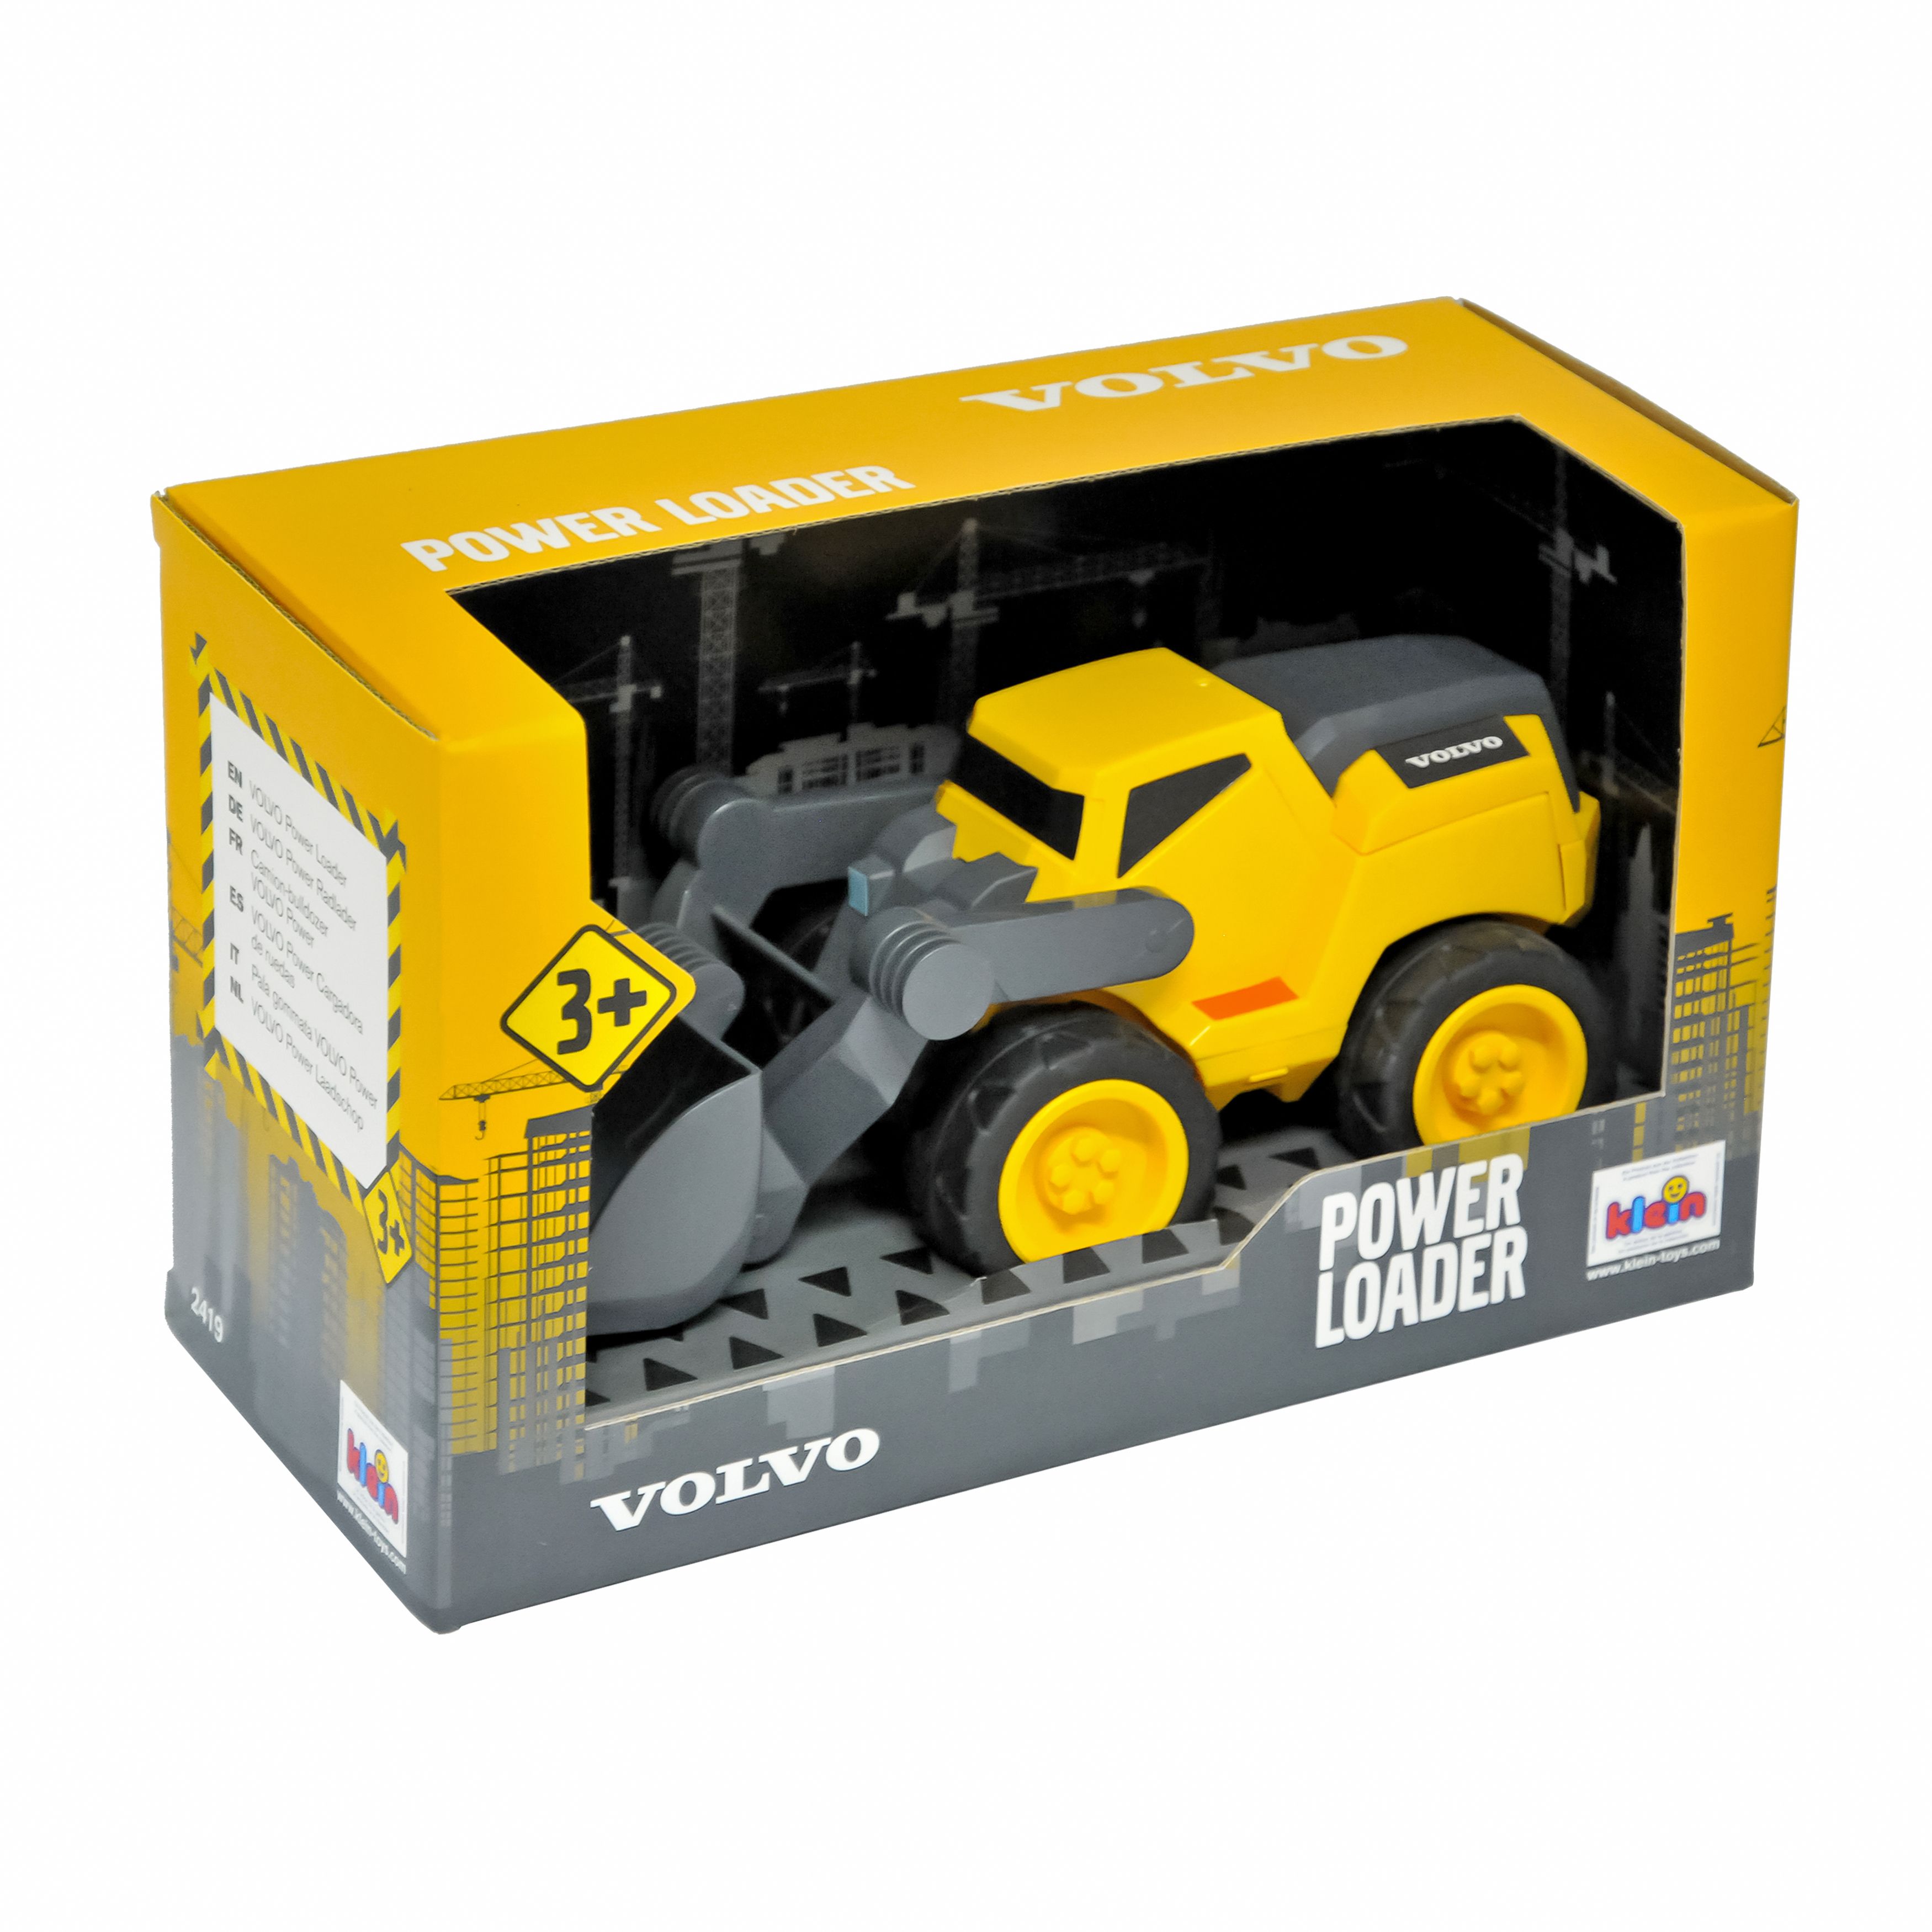 Навантажувач Klein Volvo, в коробці, жовтий (2419) - фото 1